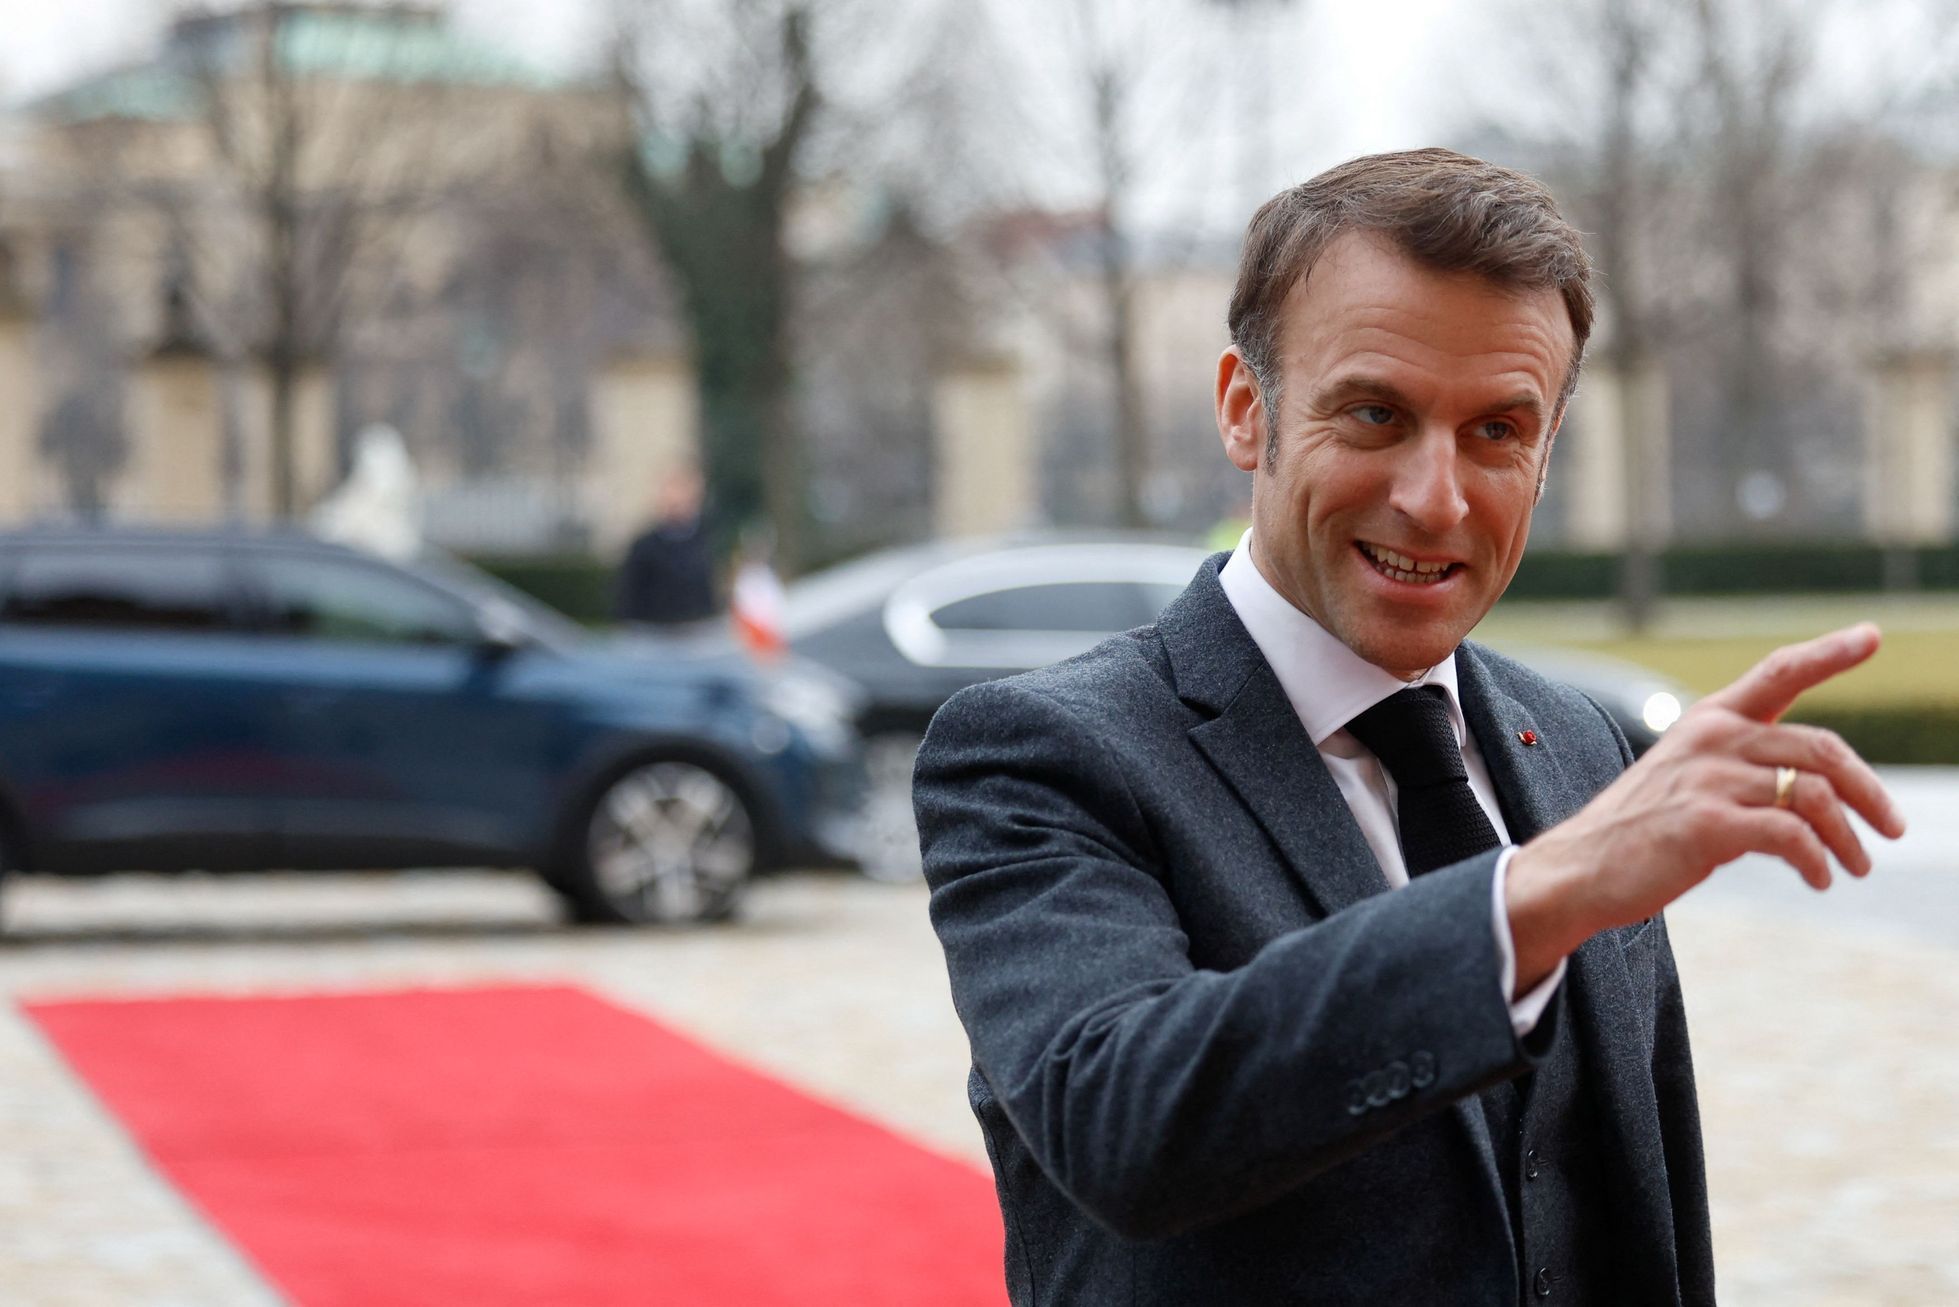 France's President Emmanuel Macron visits Prague